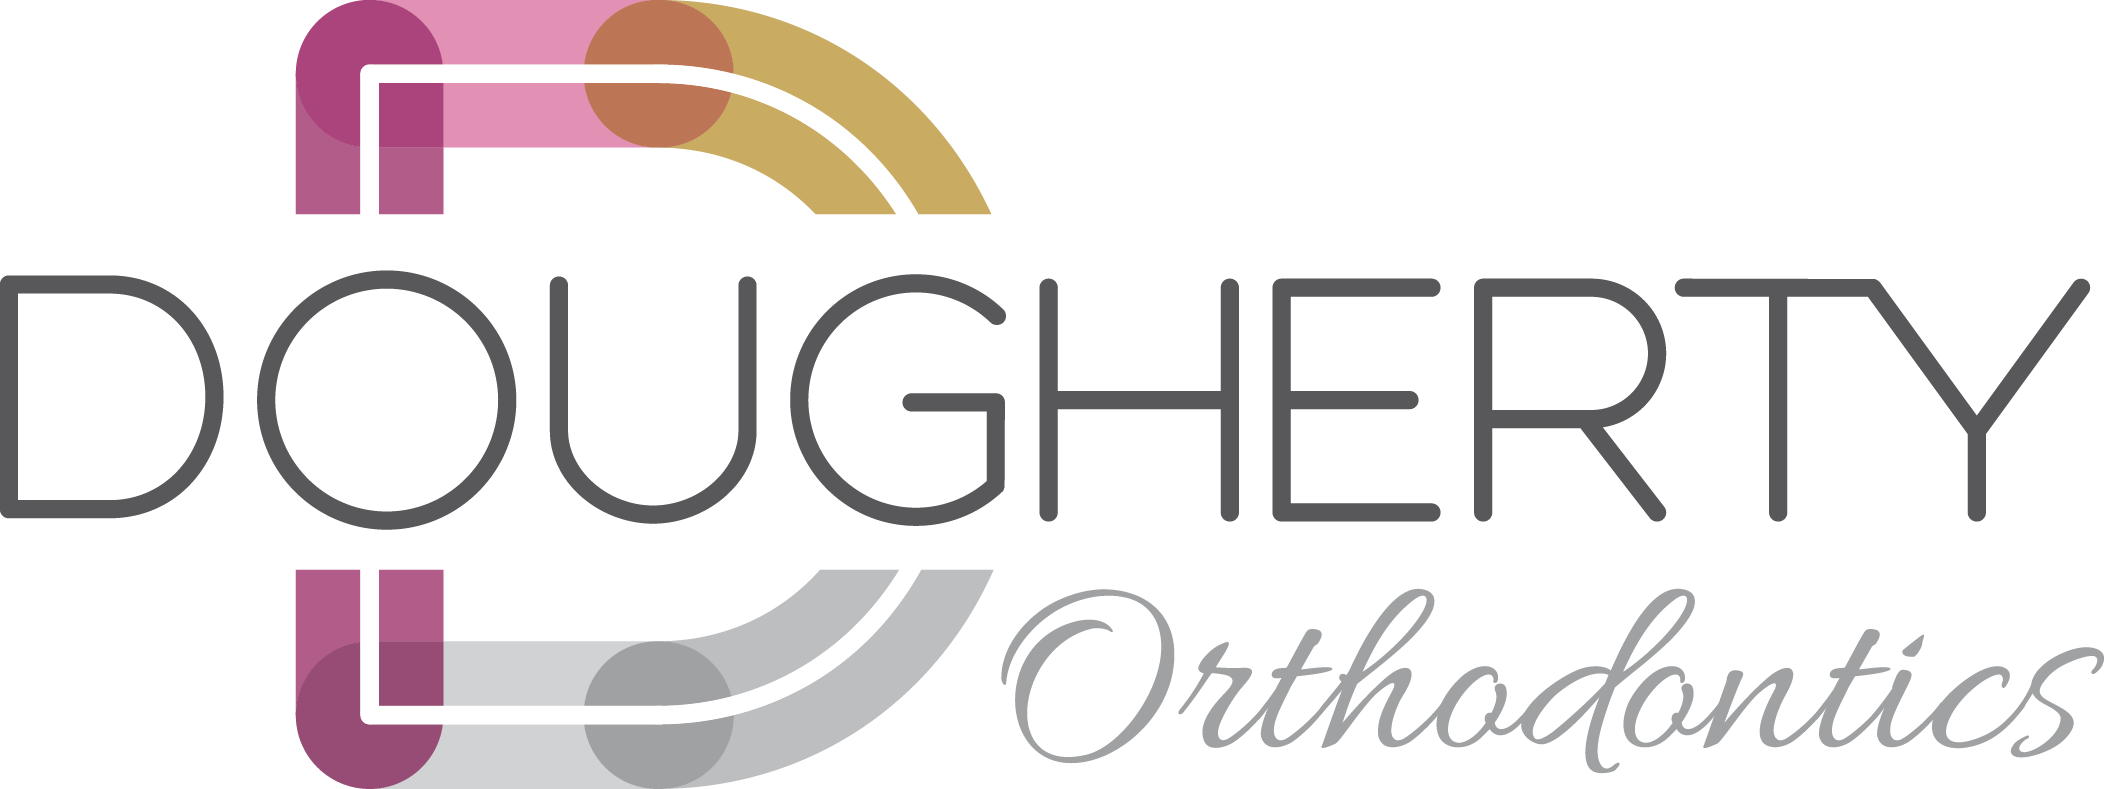 Dougherty Orthodontics logo